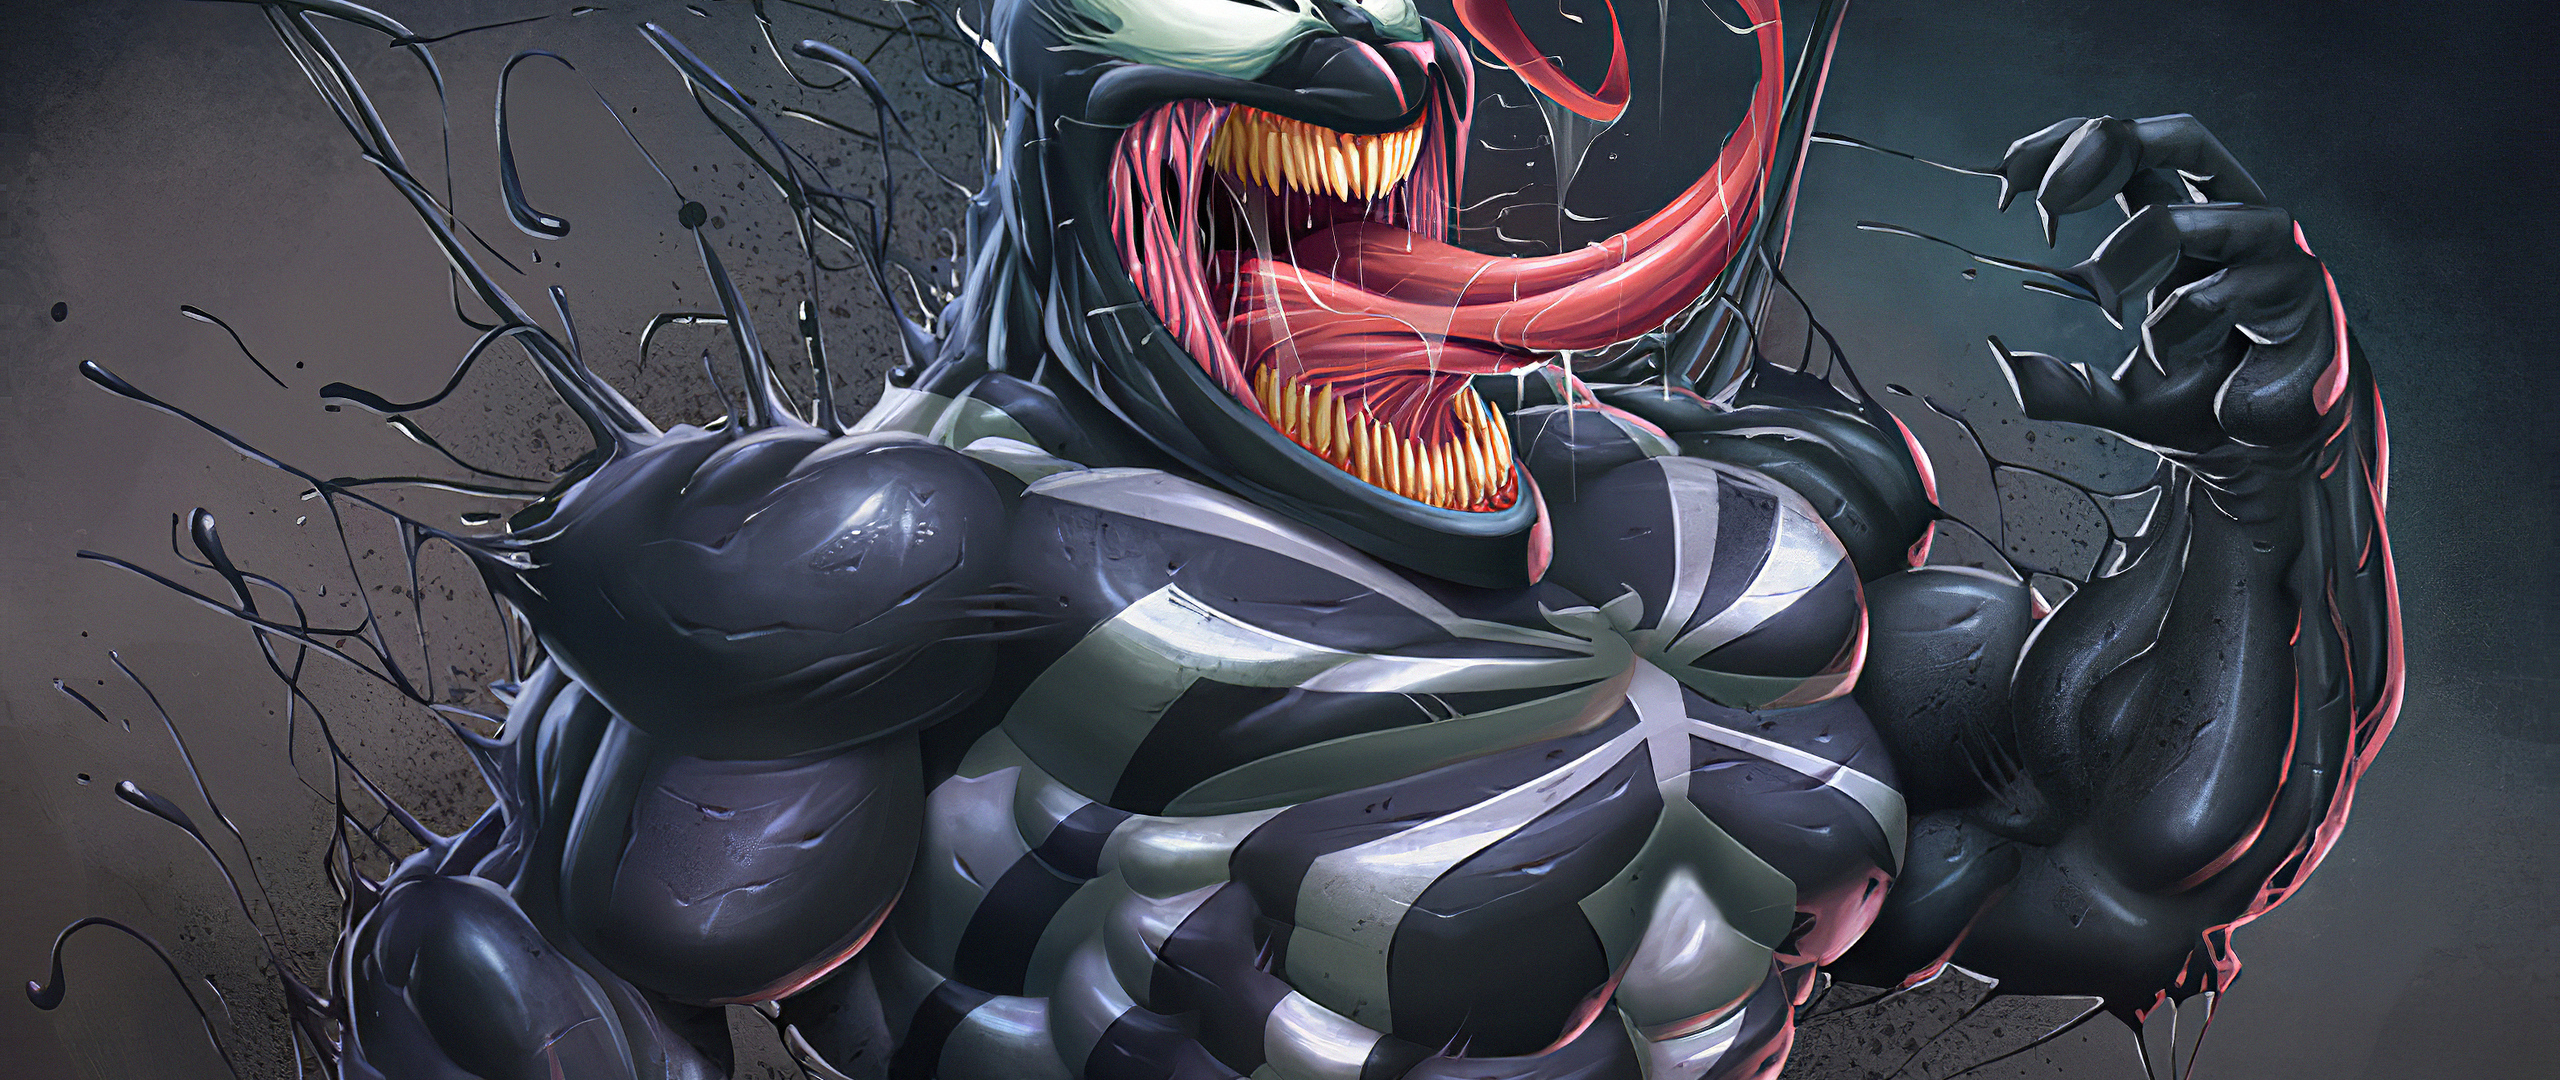 Venom Best Art In 2560x1080 Resolution. venom-best-art-3t.jpg. 